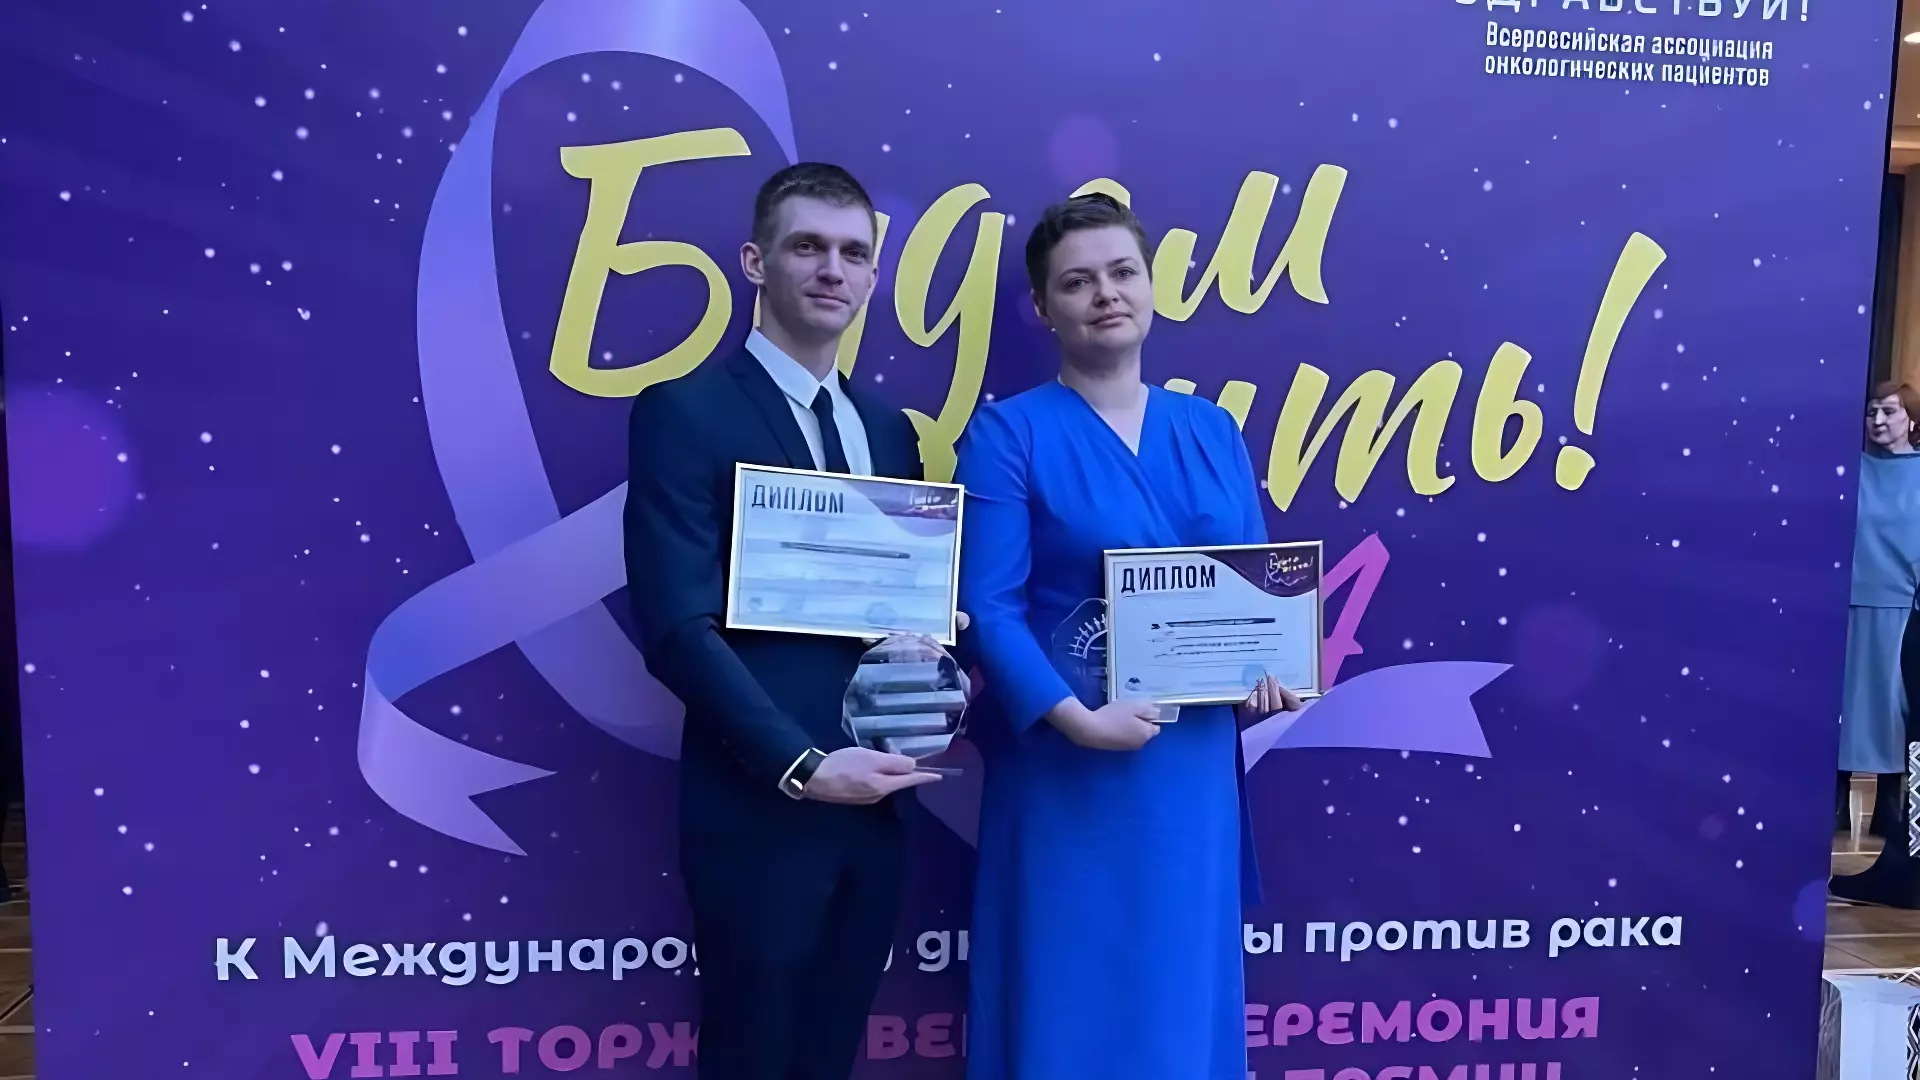 Двое врачей из Волгограда удостоены наград федерального уровня